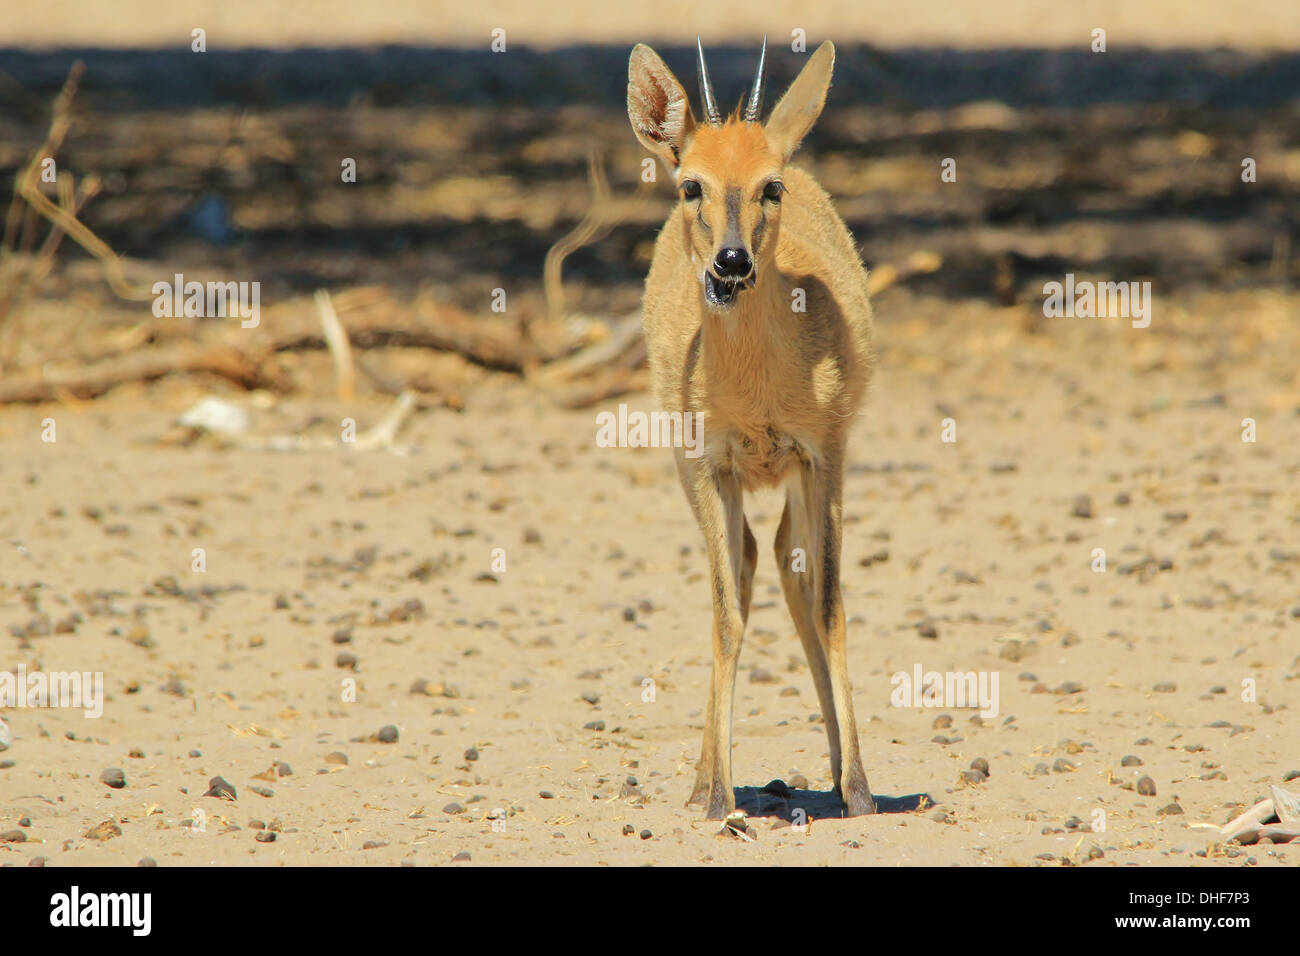 Ducker Ram - kleine Antilopen aus Afrika - liebenswerte Tiere in freier Wildbahn Stockfoto